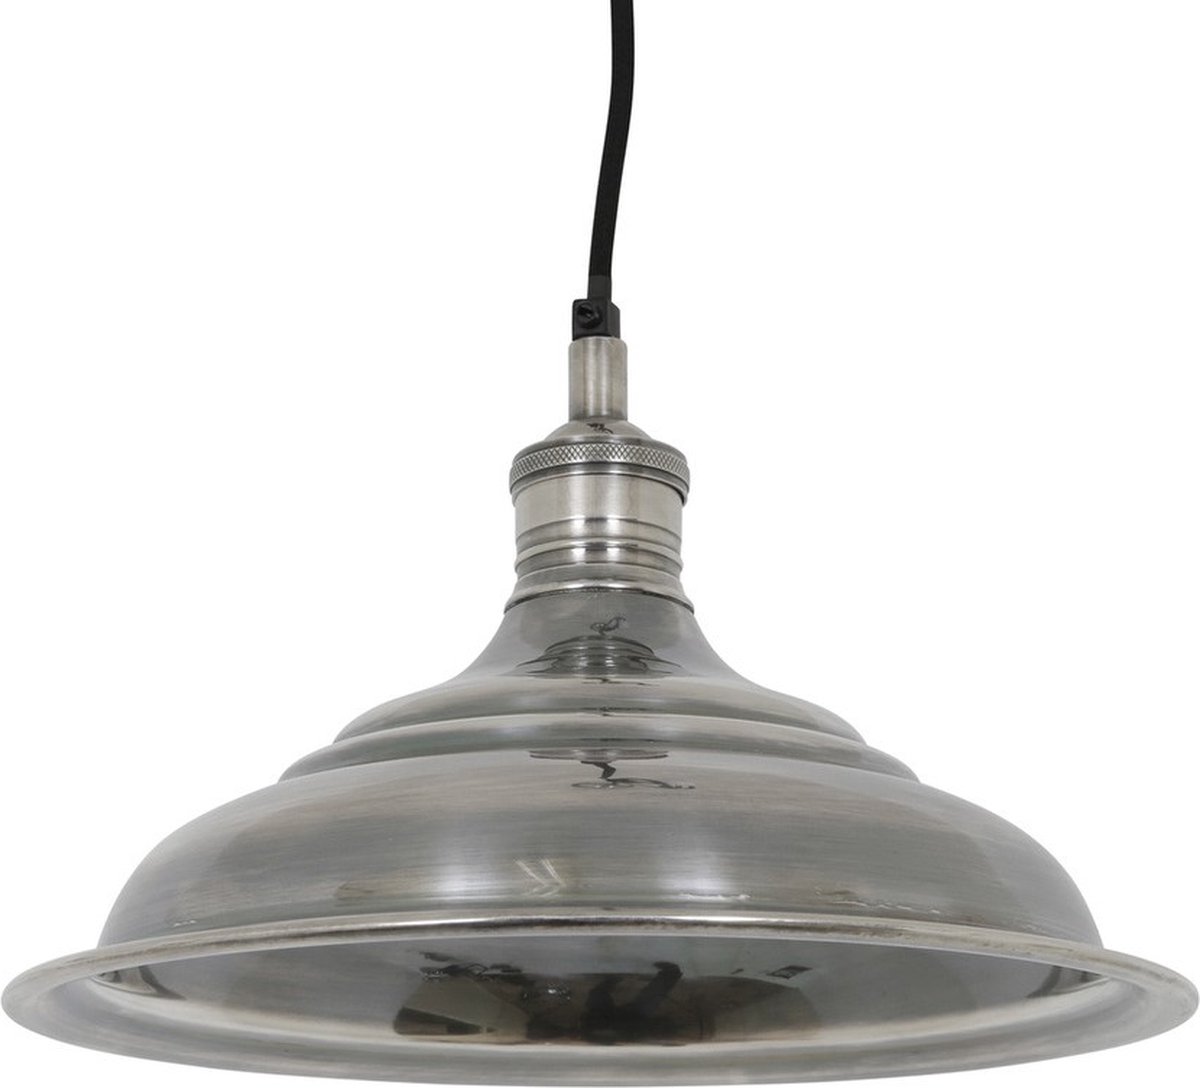 Ducasse - medium hanglamp - Antiek zilver